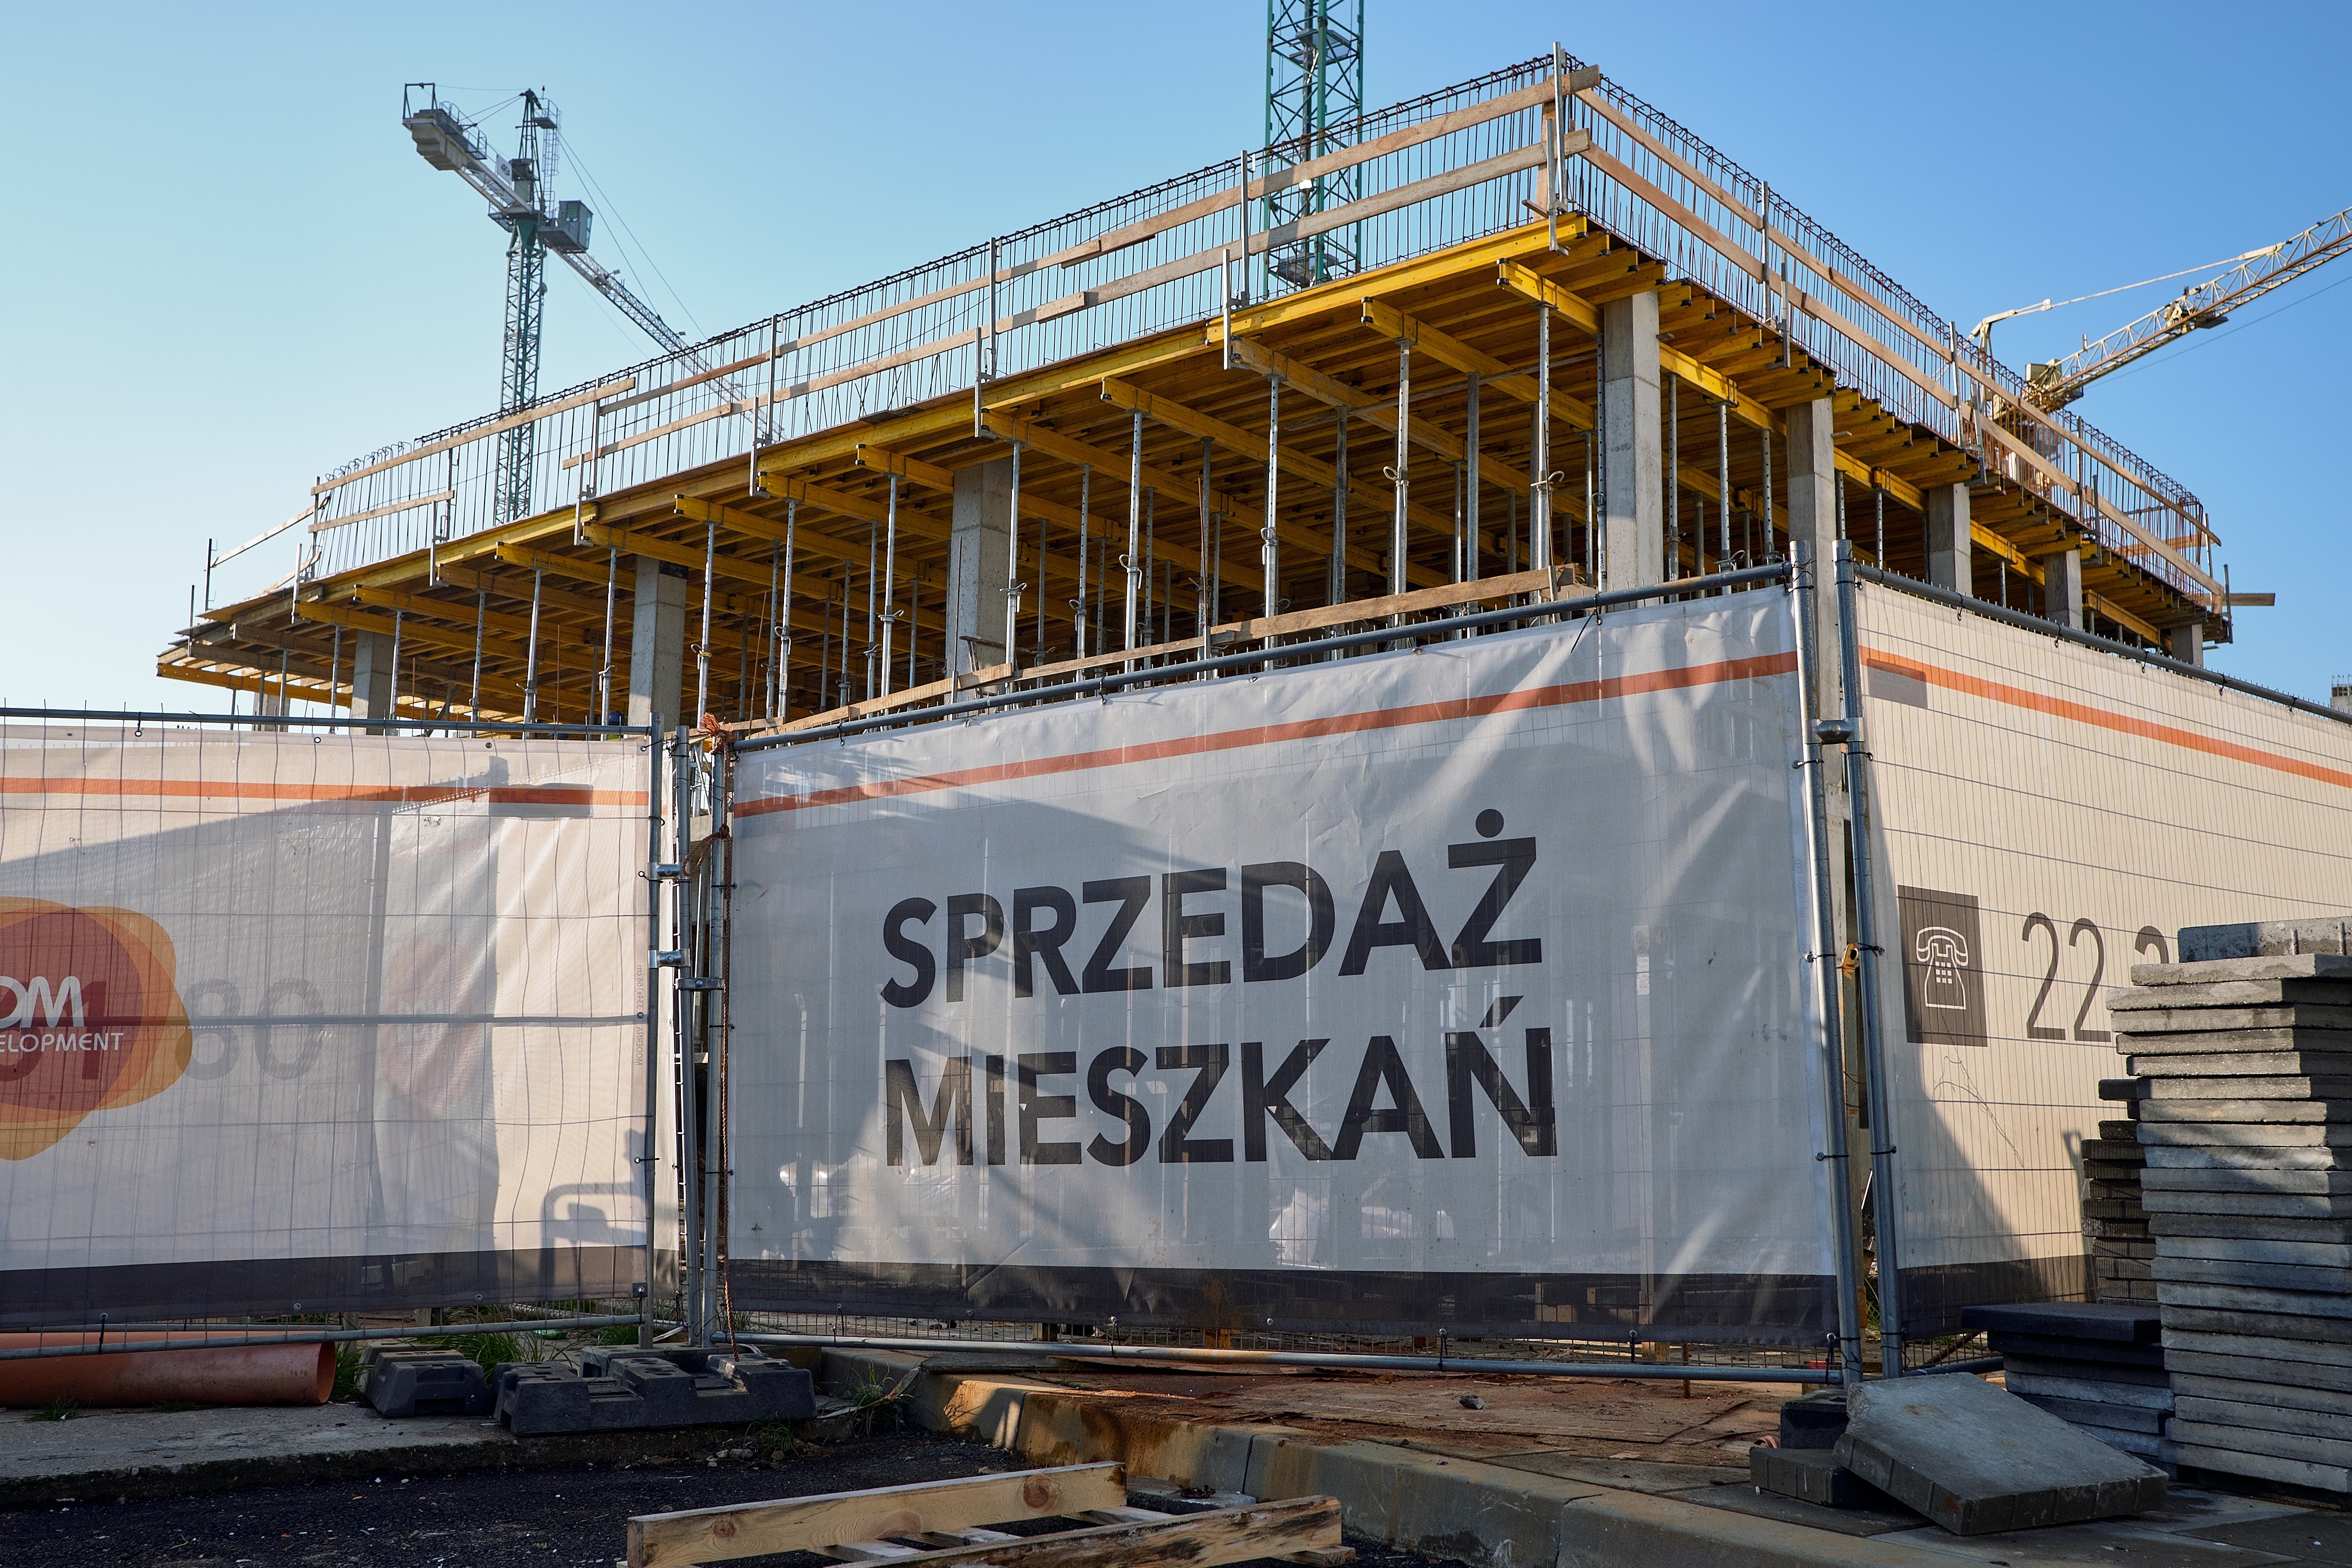 Ceny mieszkań hamują. Ale kawalerki i małe mieszkania drożeją najbardziej -  Nieruchomości - Forbes.pl